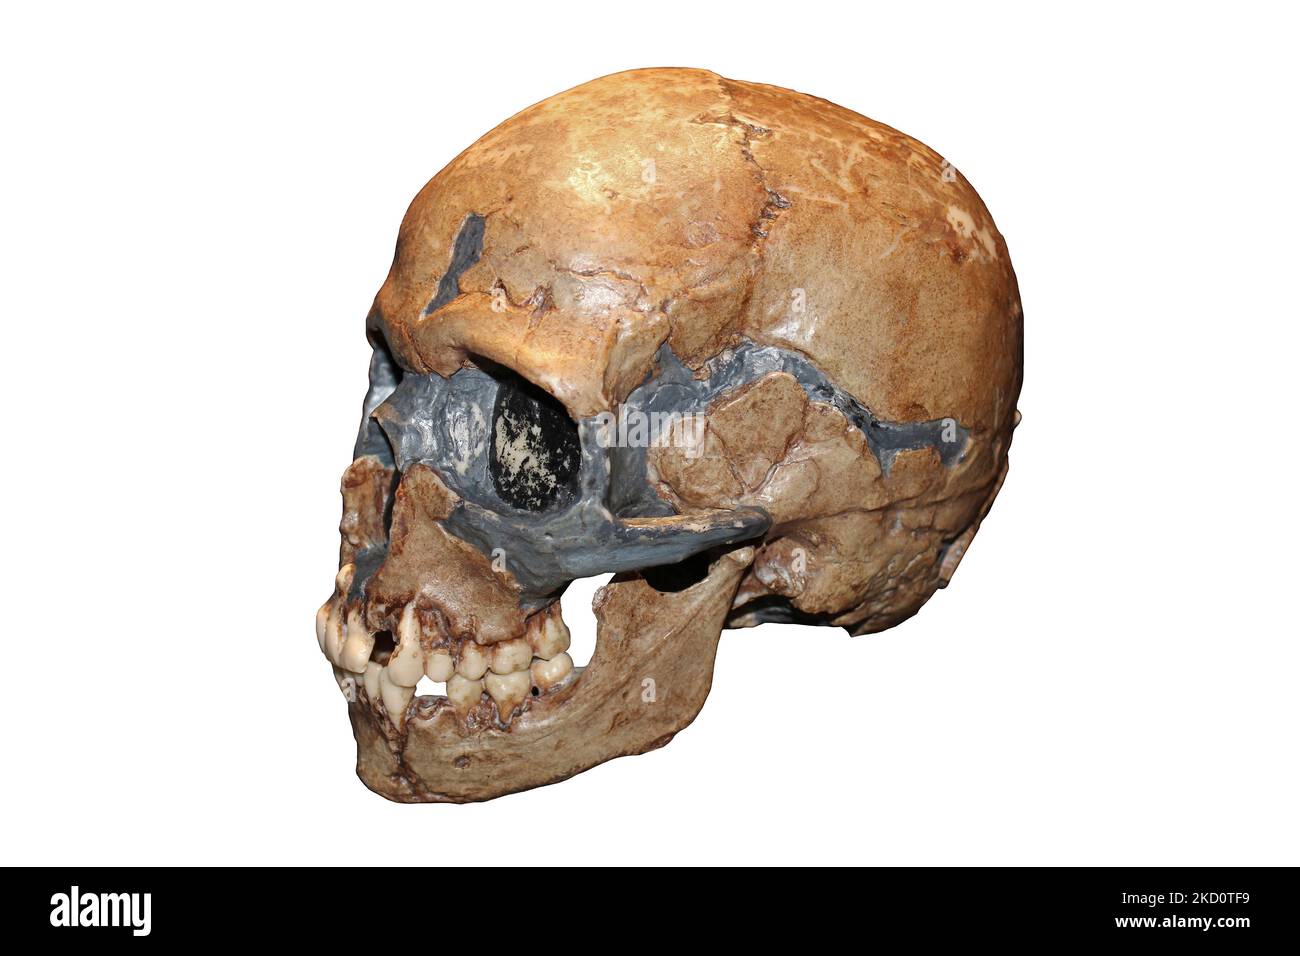 Homo sapiens crâne d'enfant grotte de Qafzeh, Israël - Qafzeh11 Banque D'Images